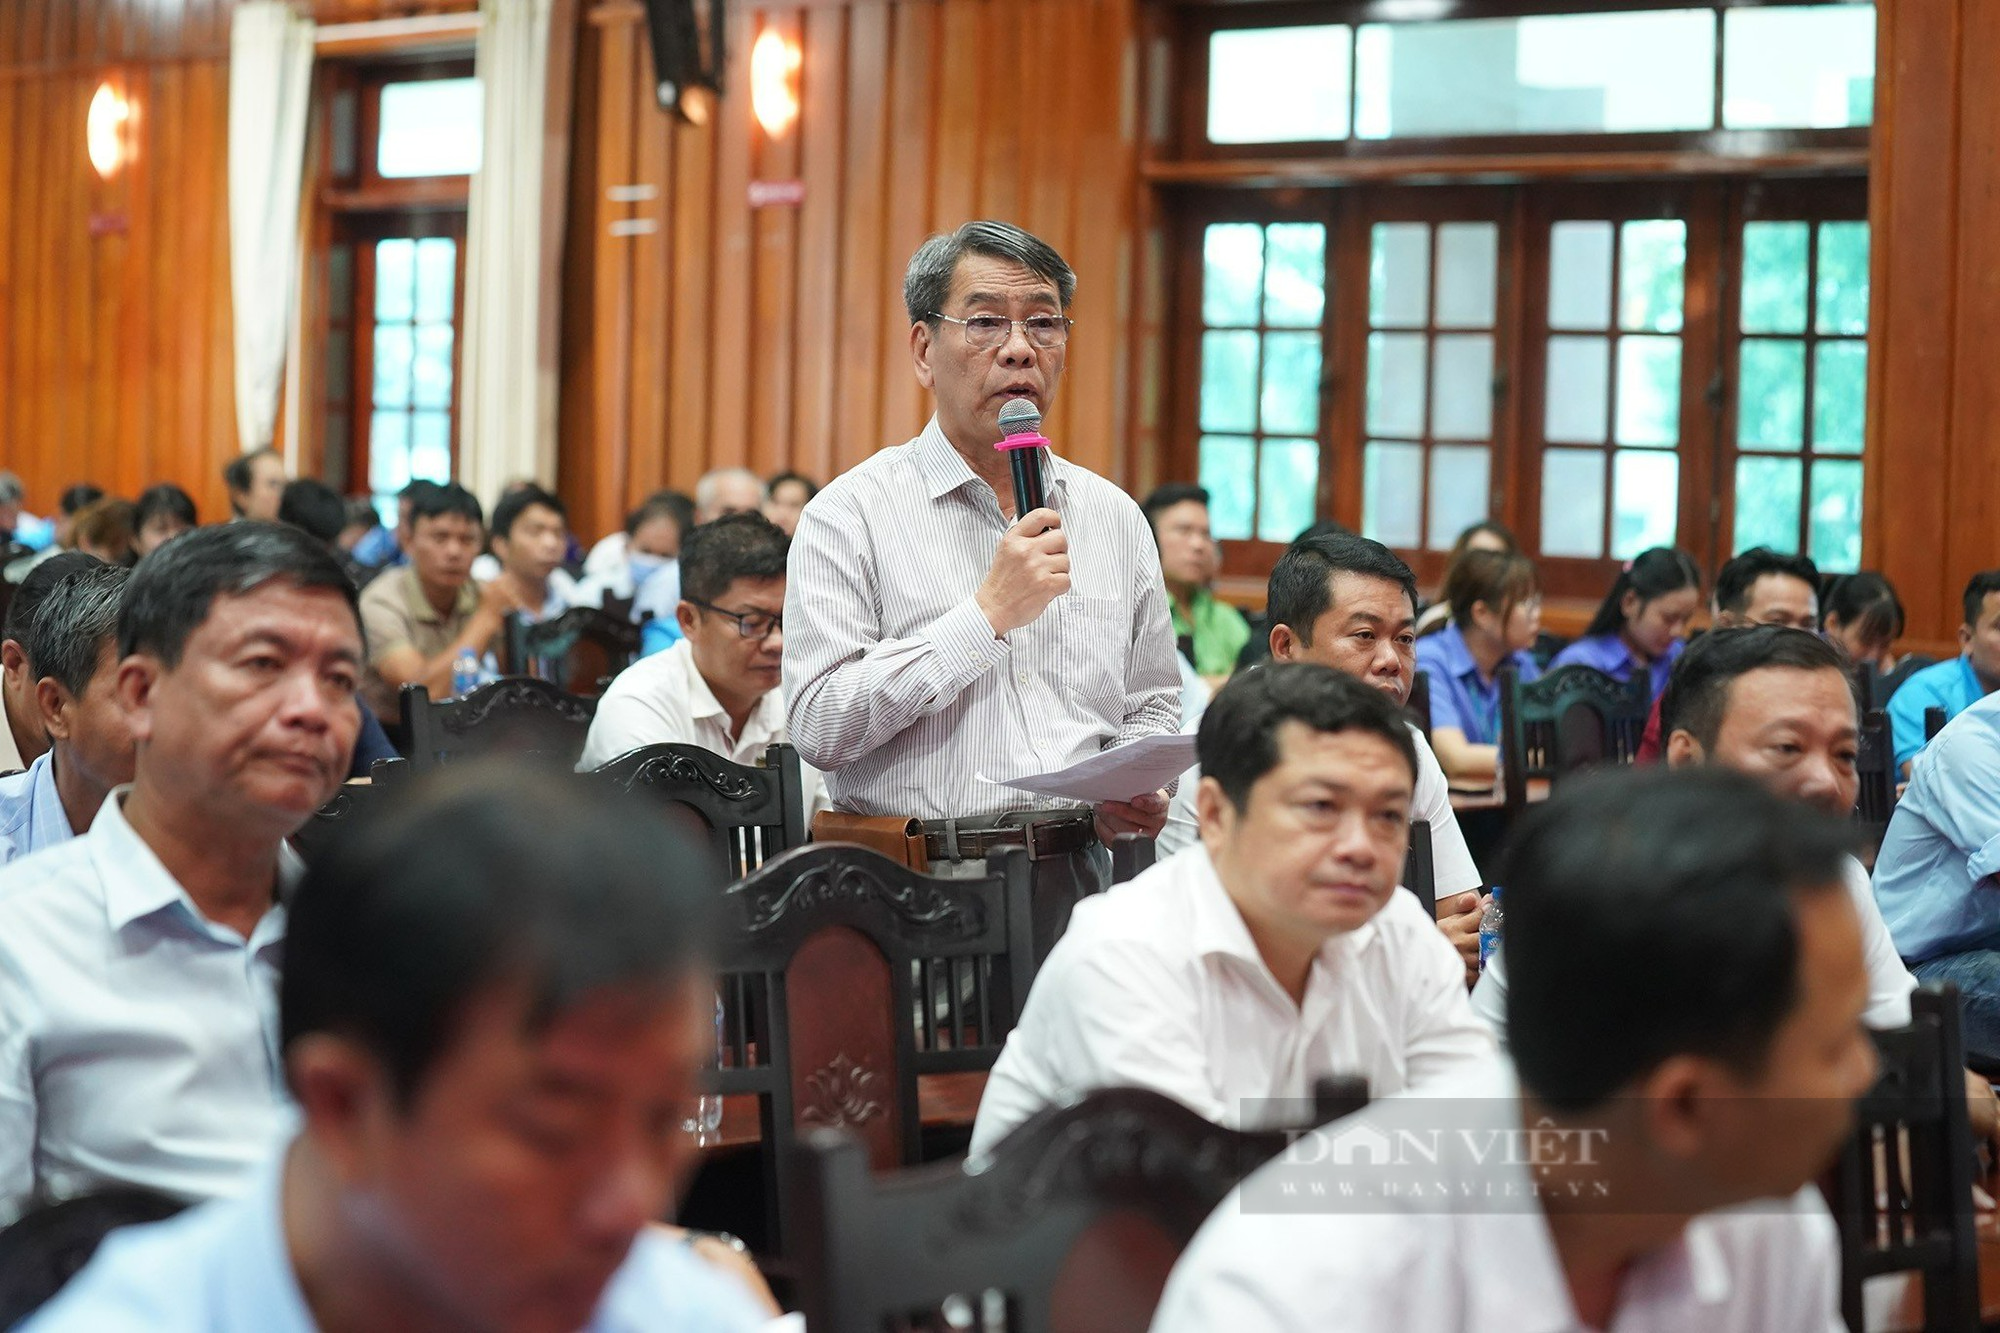 Hơn 300 công nhân đối thoại cùng Phó chủ tịch UBND tỉnh Long An - Ảnh 2.